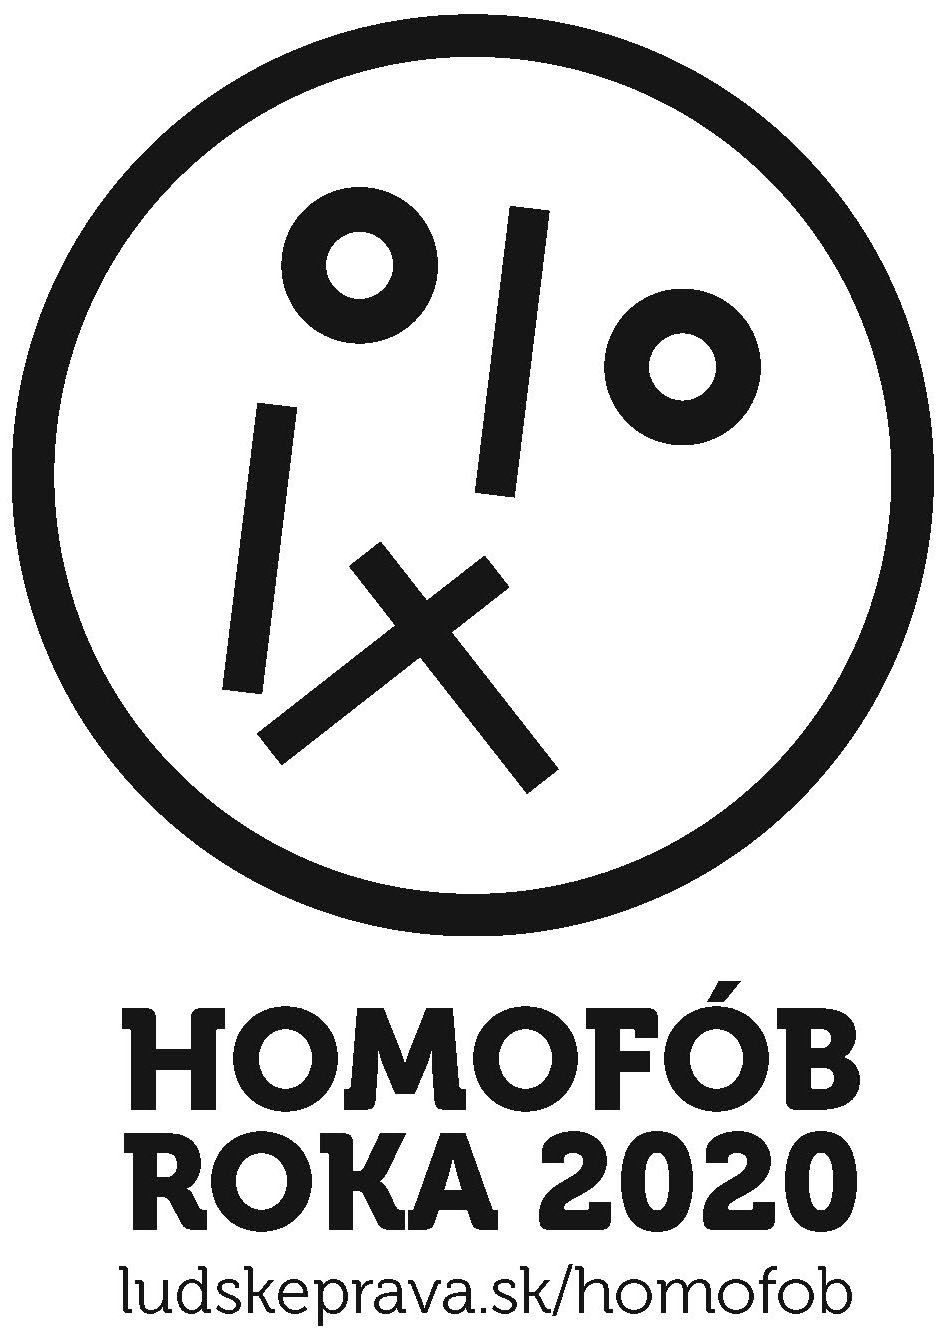 Homofob roka 2020 logo